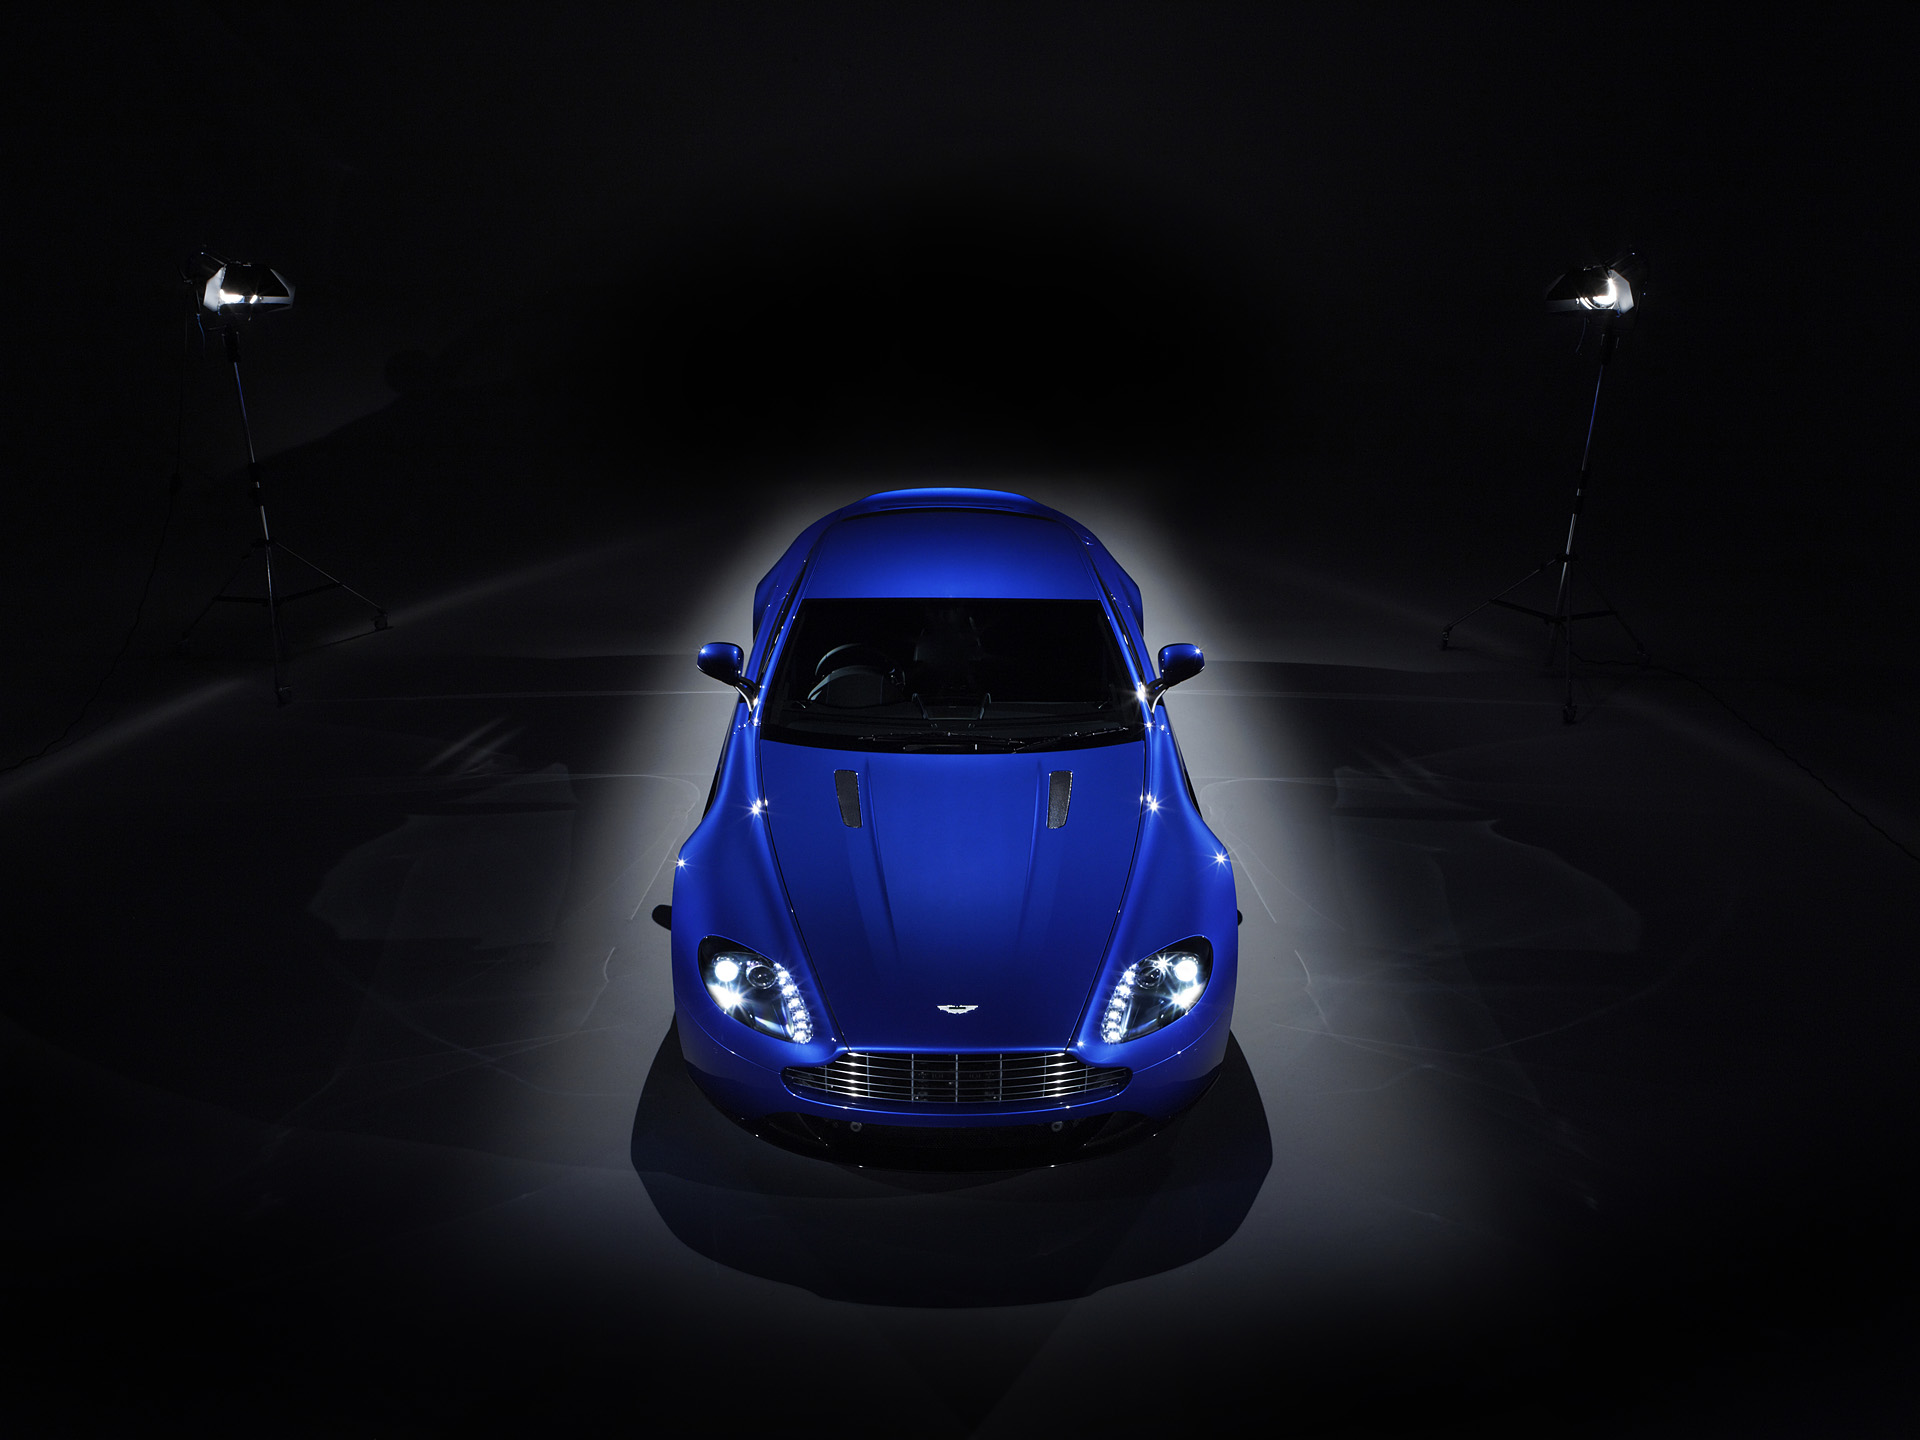 Descarga gratuita de fondo de pantalla para móvil de Aston Martin V8 Vantage, Aston Martin, Vehículos.